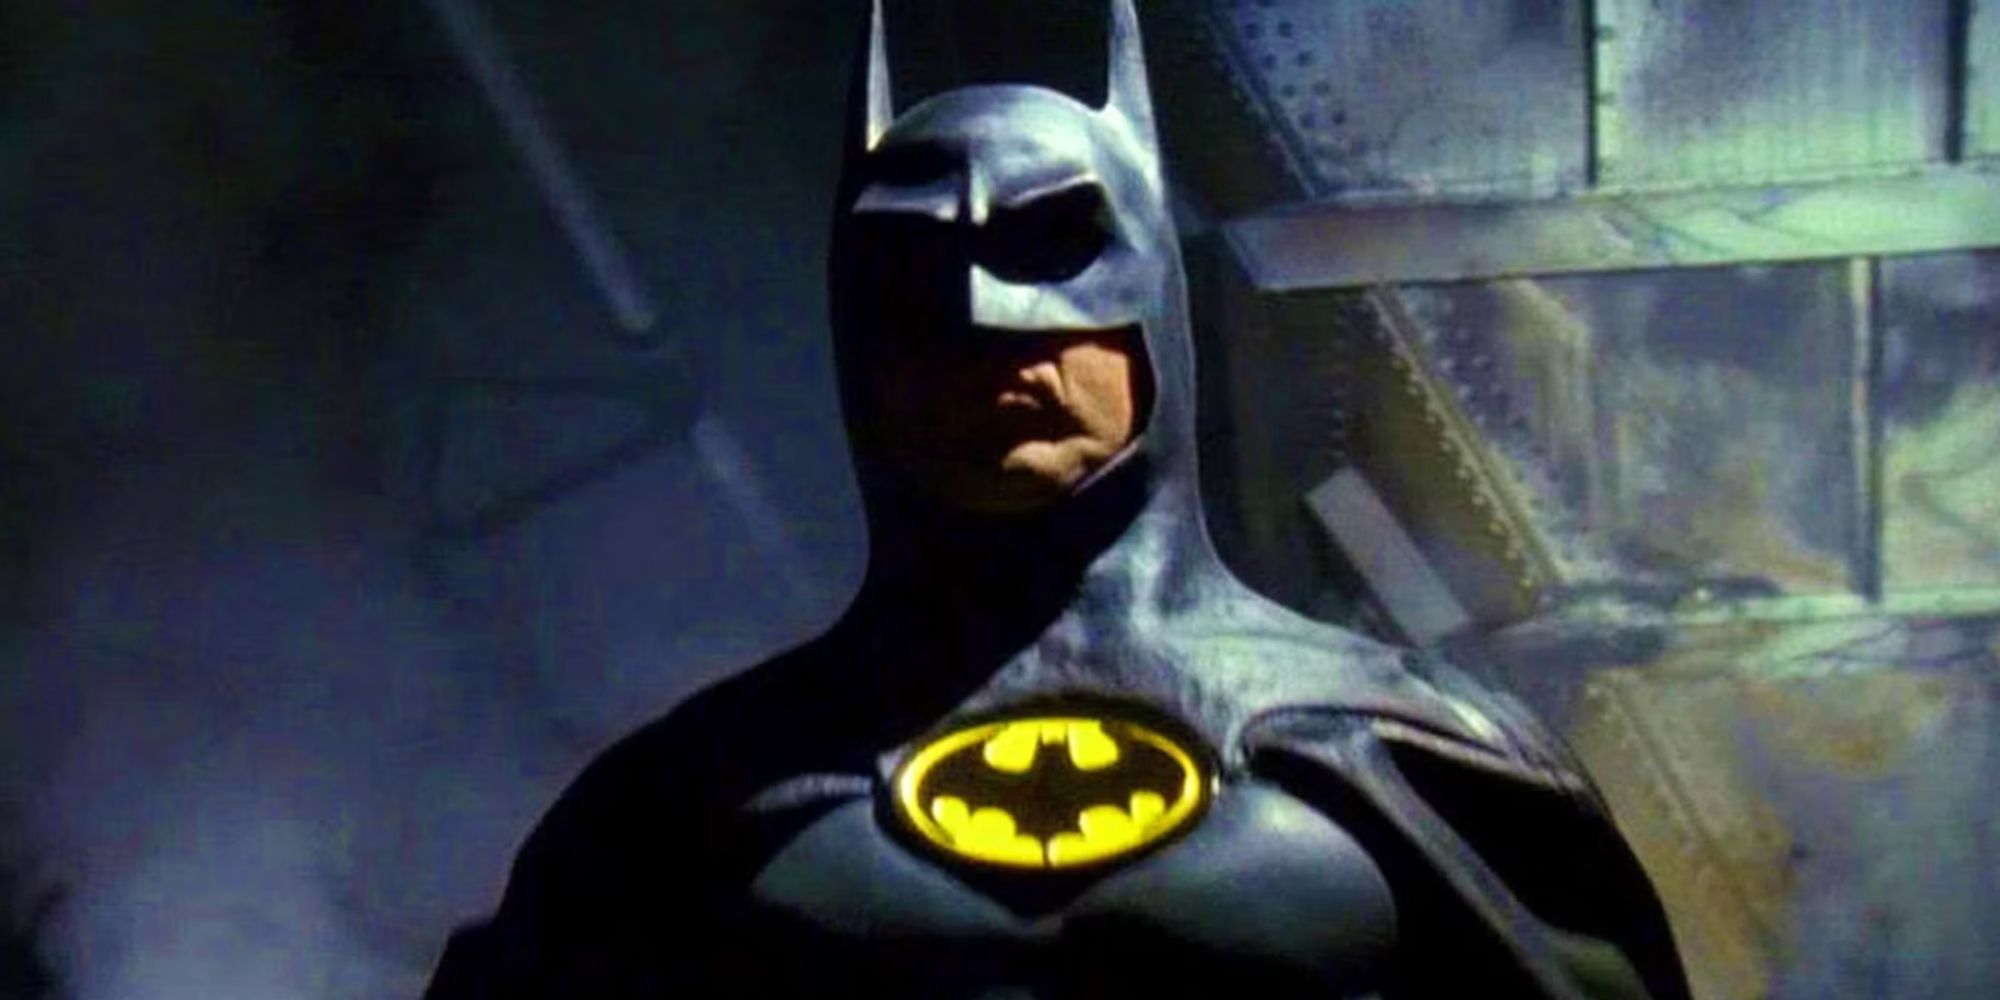 Michael Keaton wearing the Batsuit as Batman in Batman (1989)